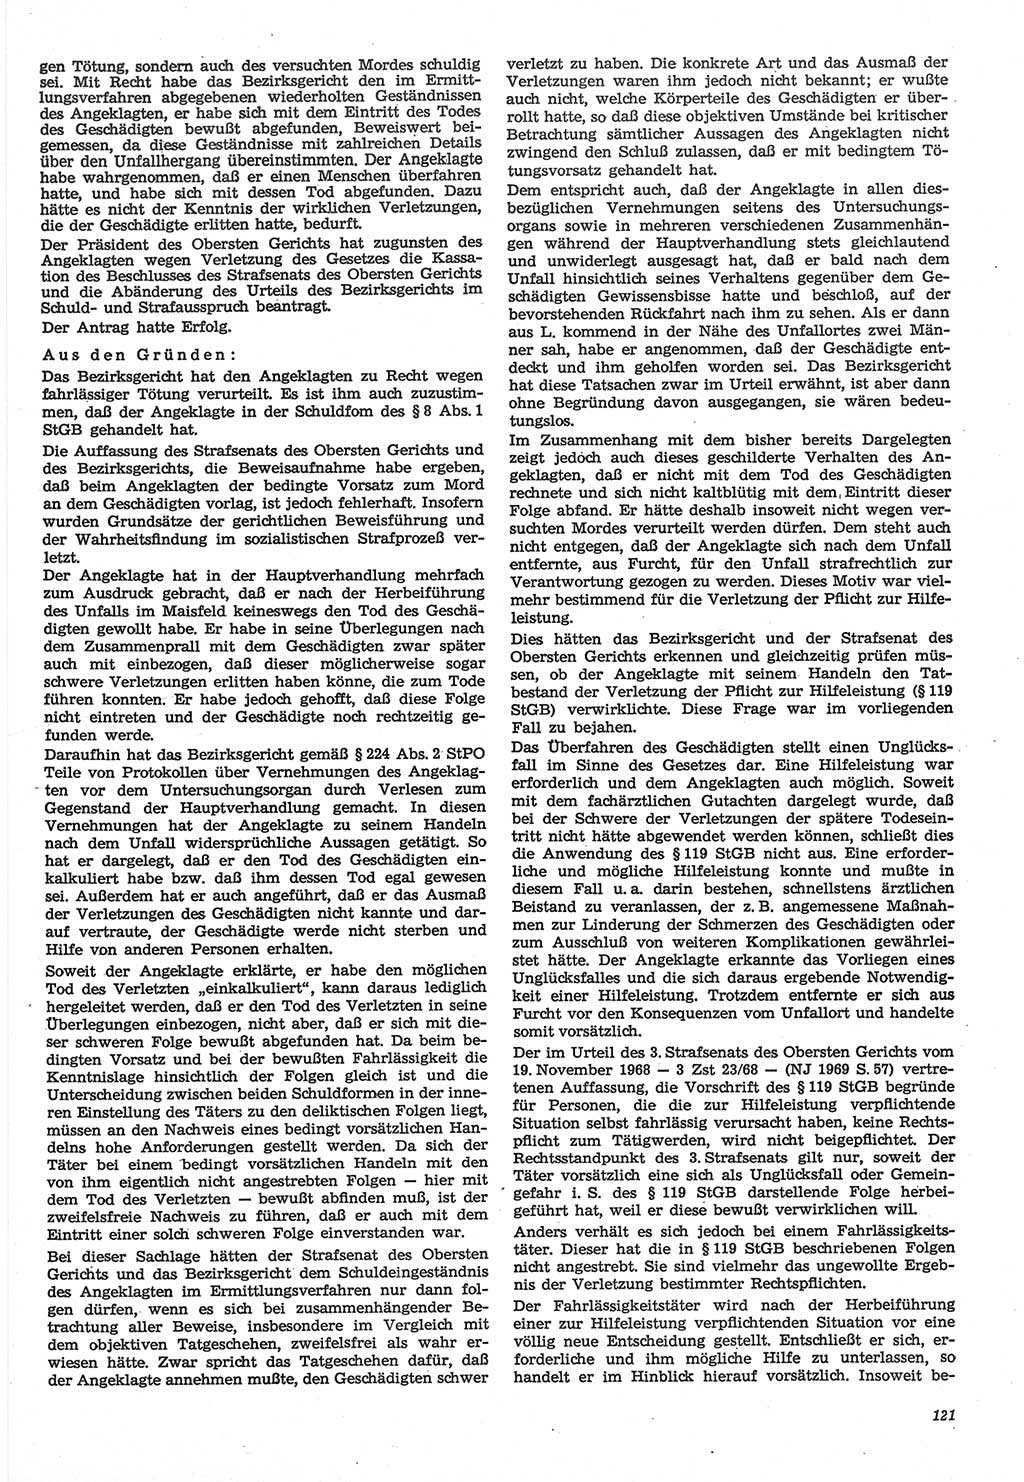 Neue Justiz (NJ), Zeitschrift für Recht und Rechtswissenschaft-Zeitschrift, sozialistisches Recht und Gesetzlichkeit, 31. Jahrgang 1977, Seite 121 (NJ DDR 1977, S. 121)